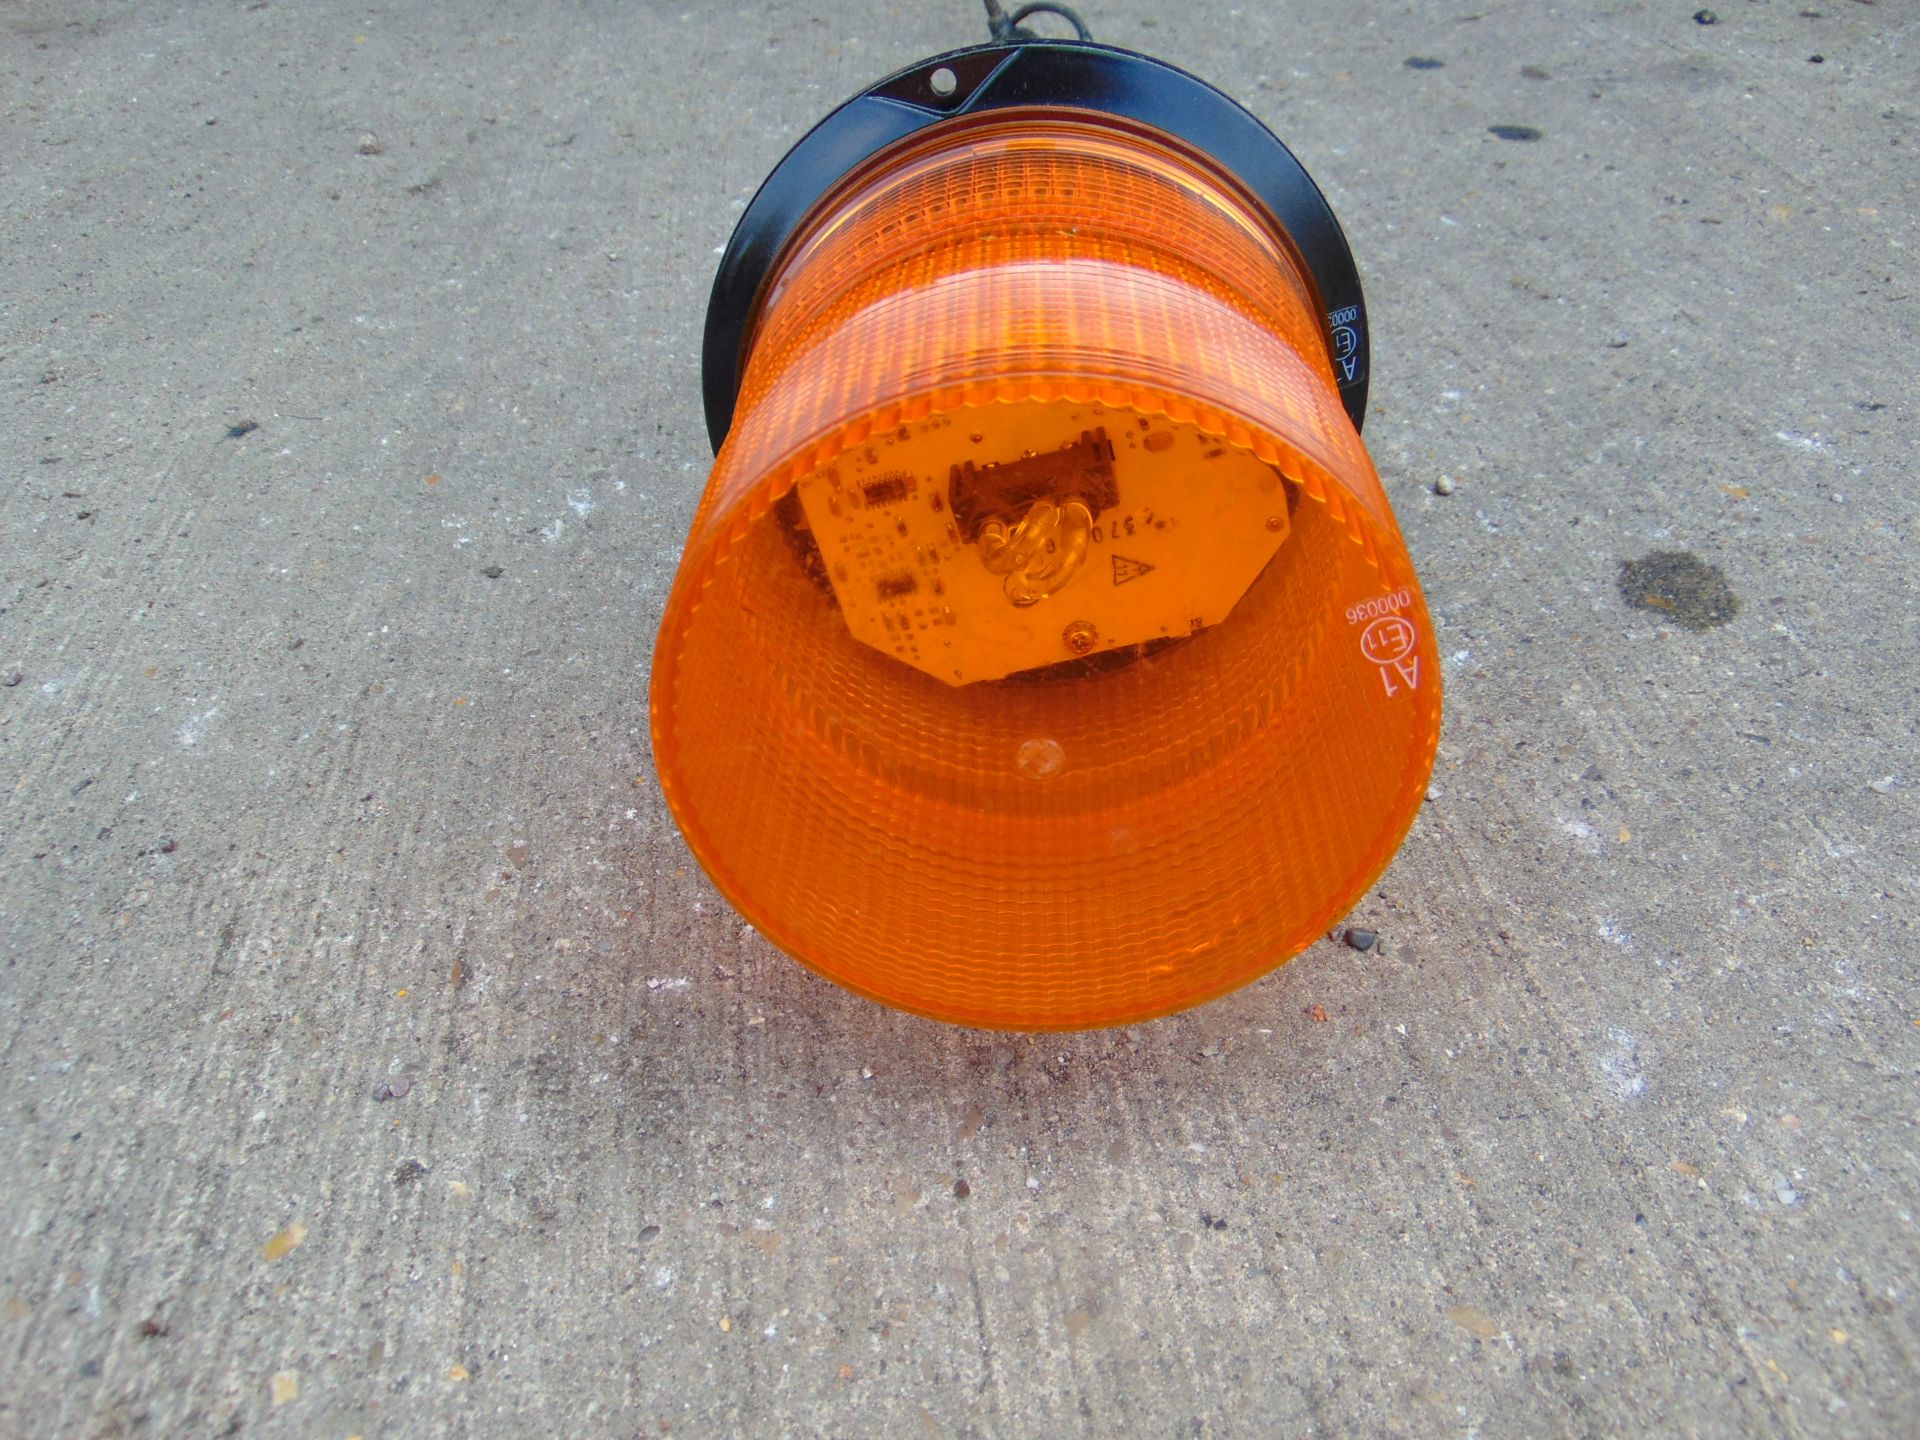 Unused Vehicle Amber flashing beacon - Image 2 of 4